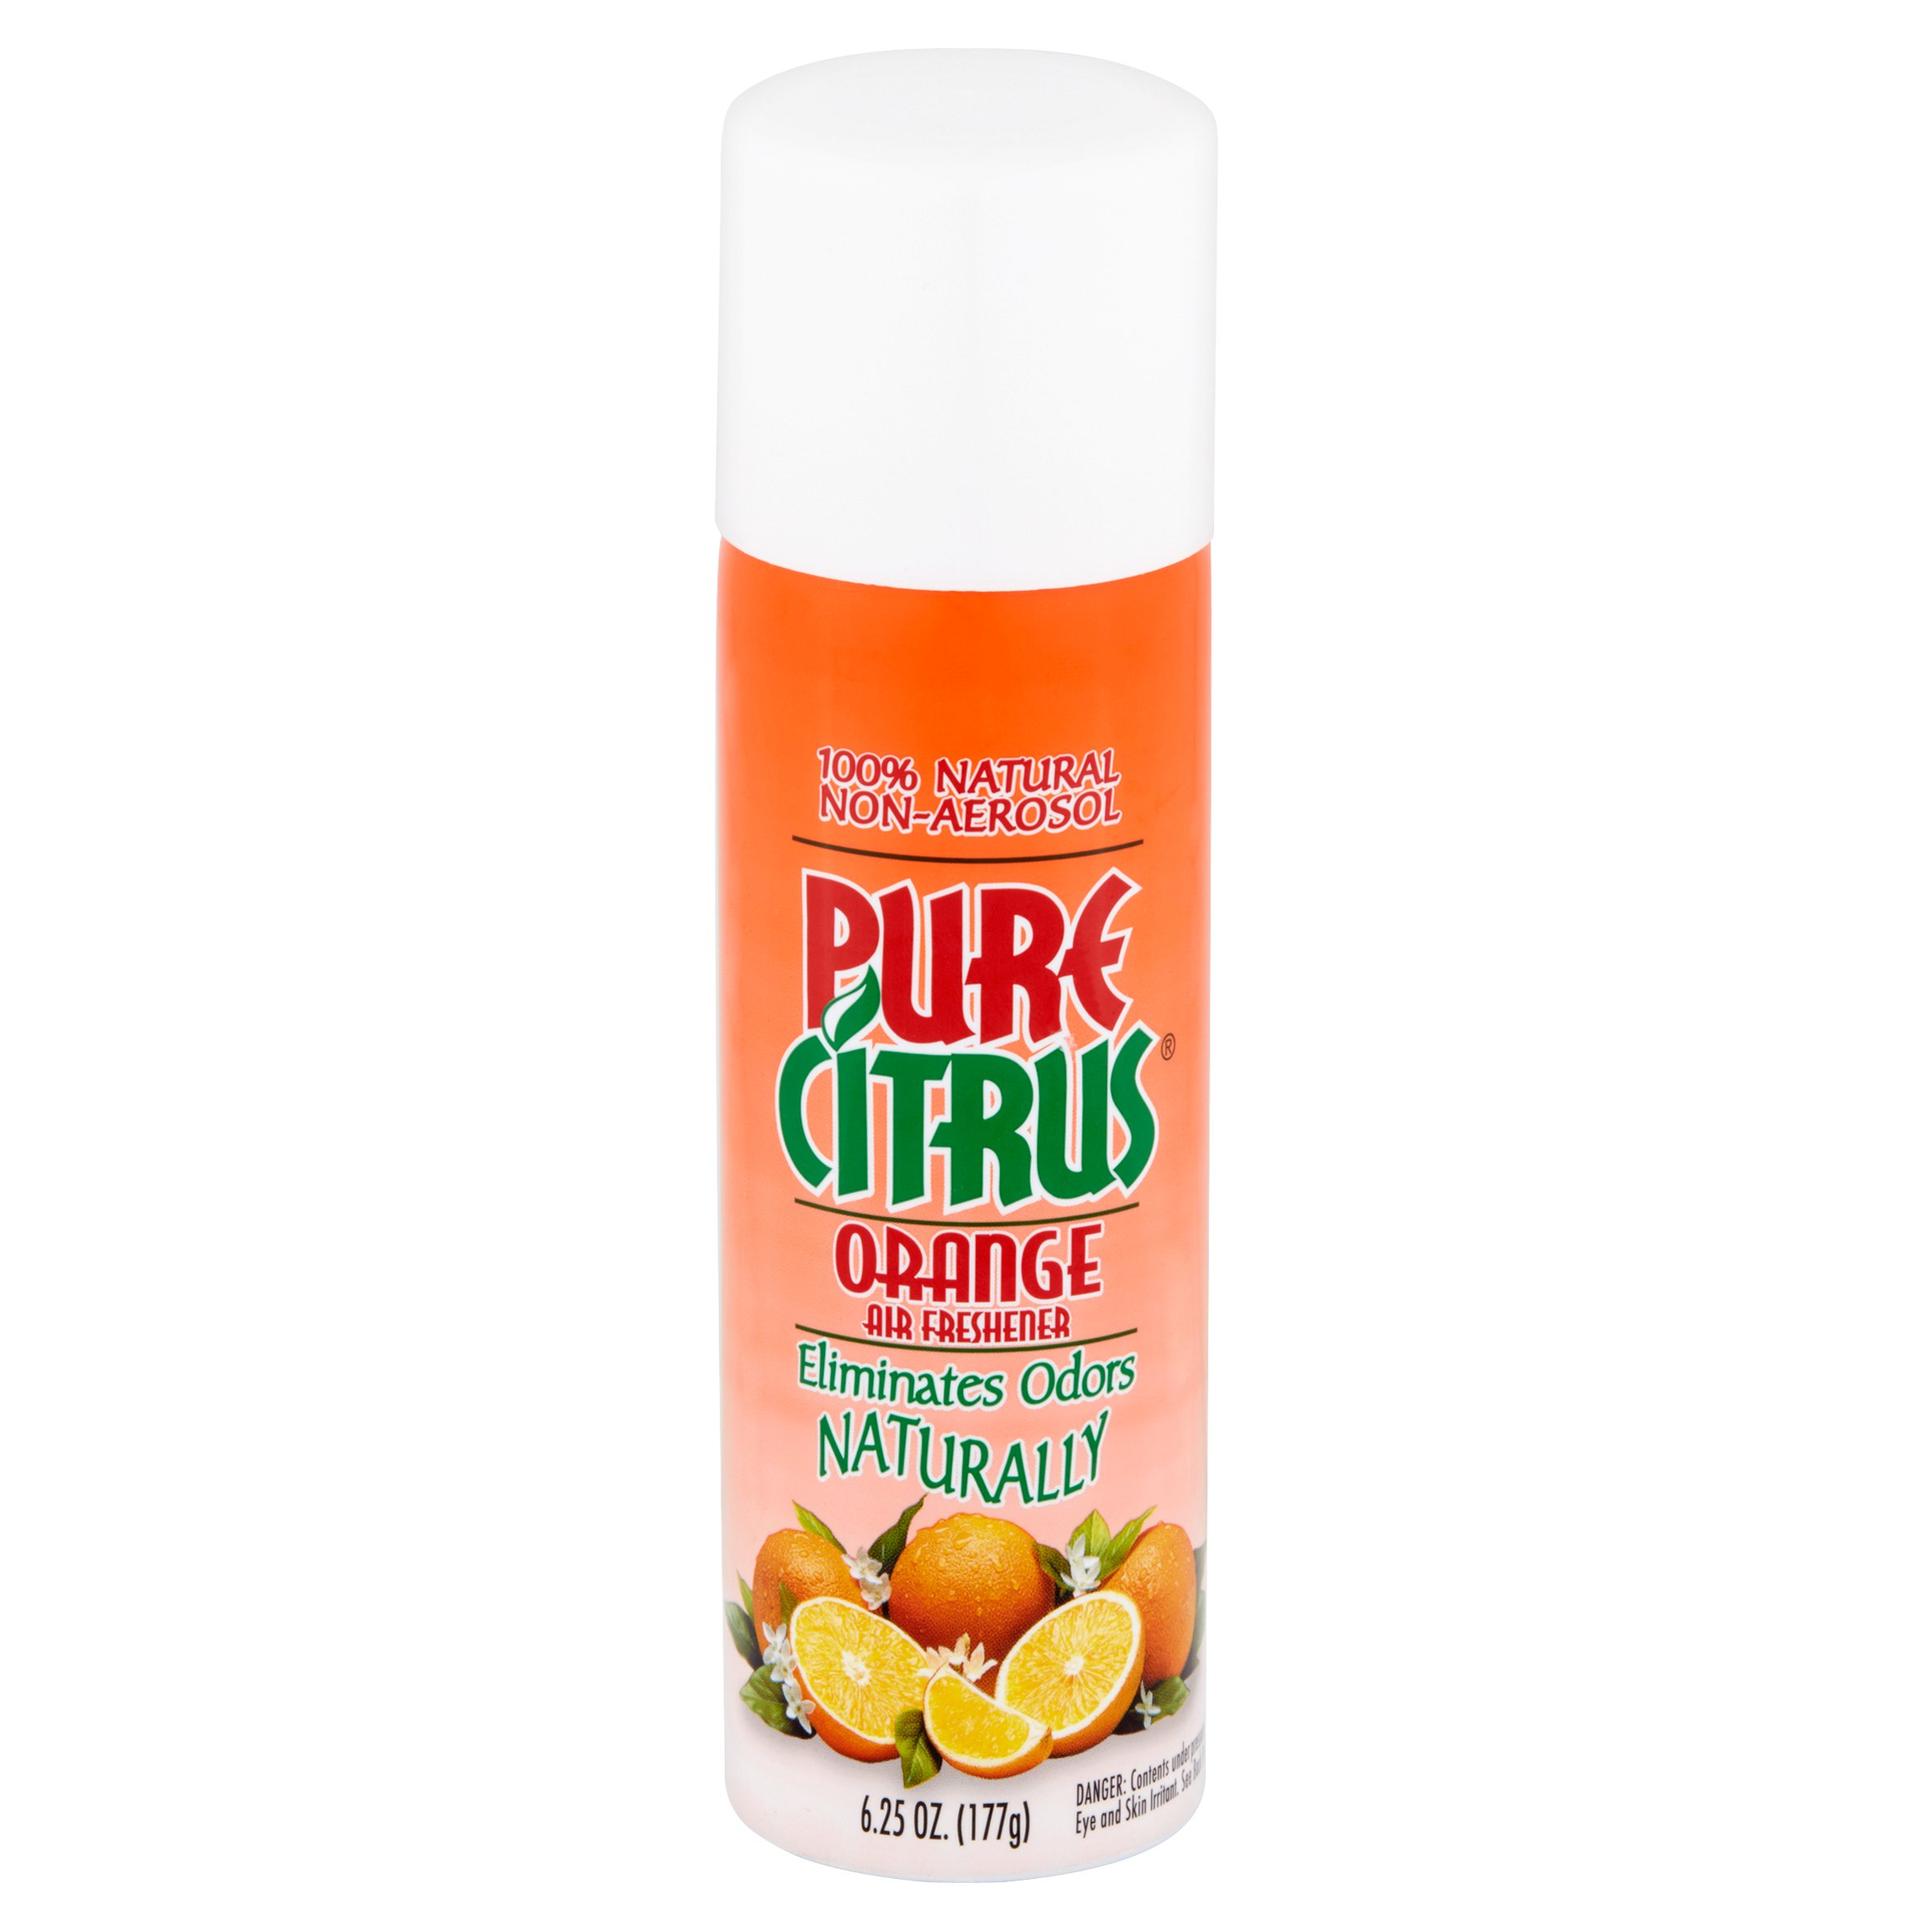 Pure Citrus Orange Air Freshener, 6.25 oz - image 2 of 5